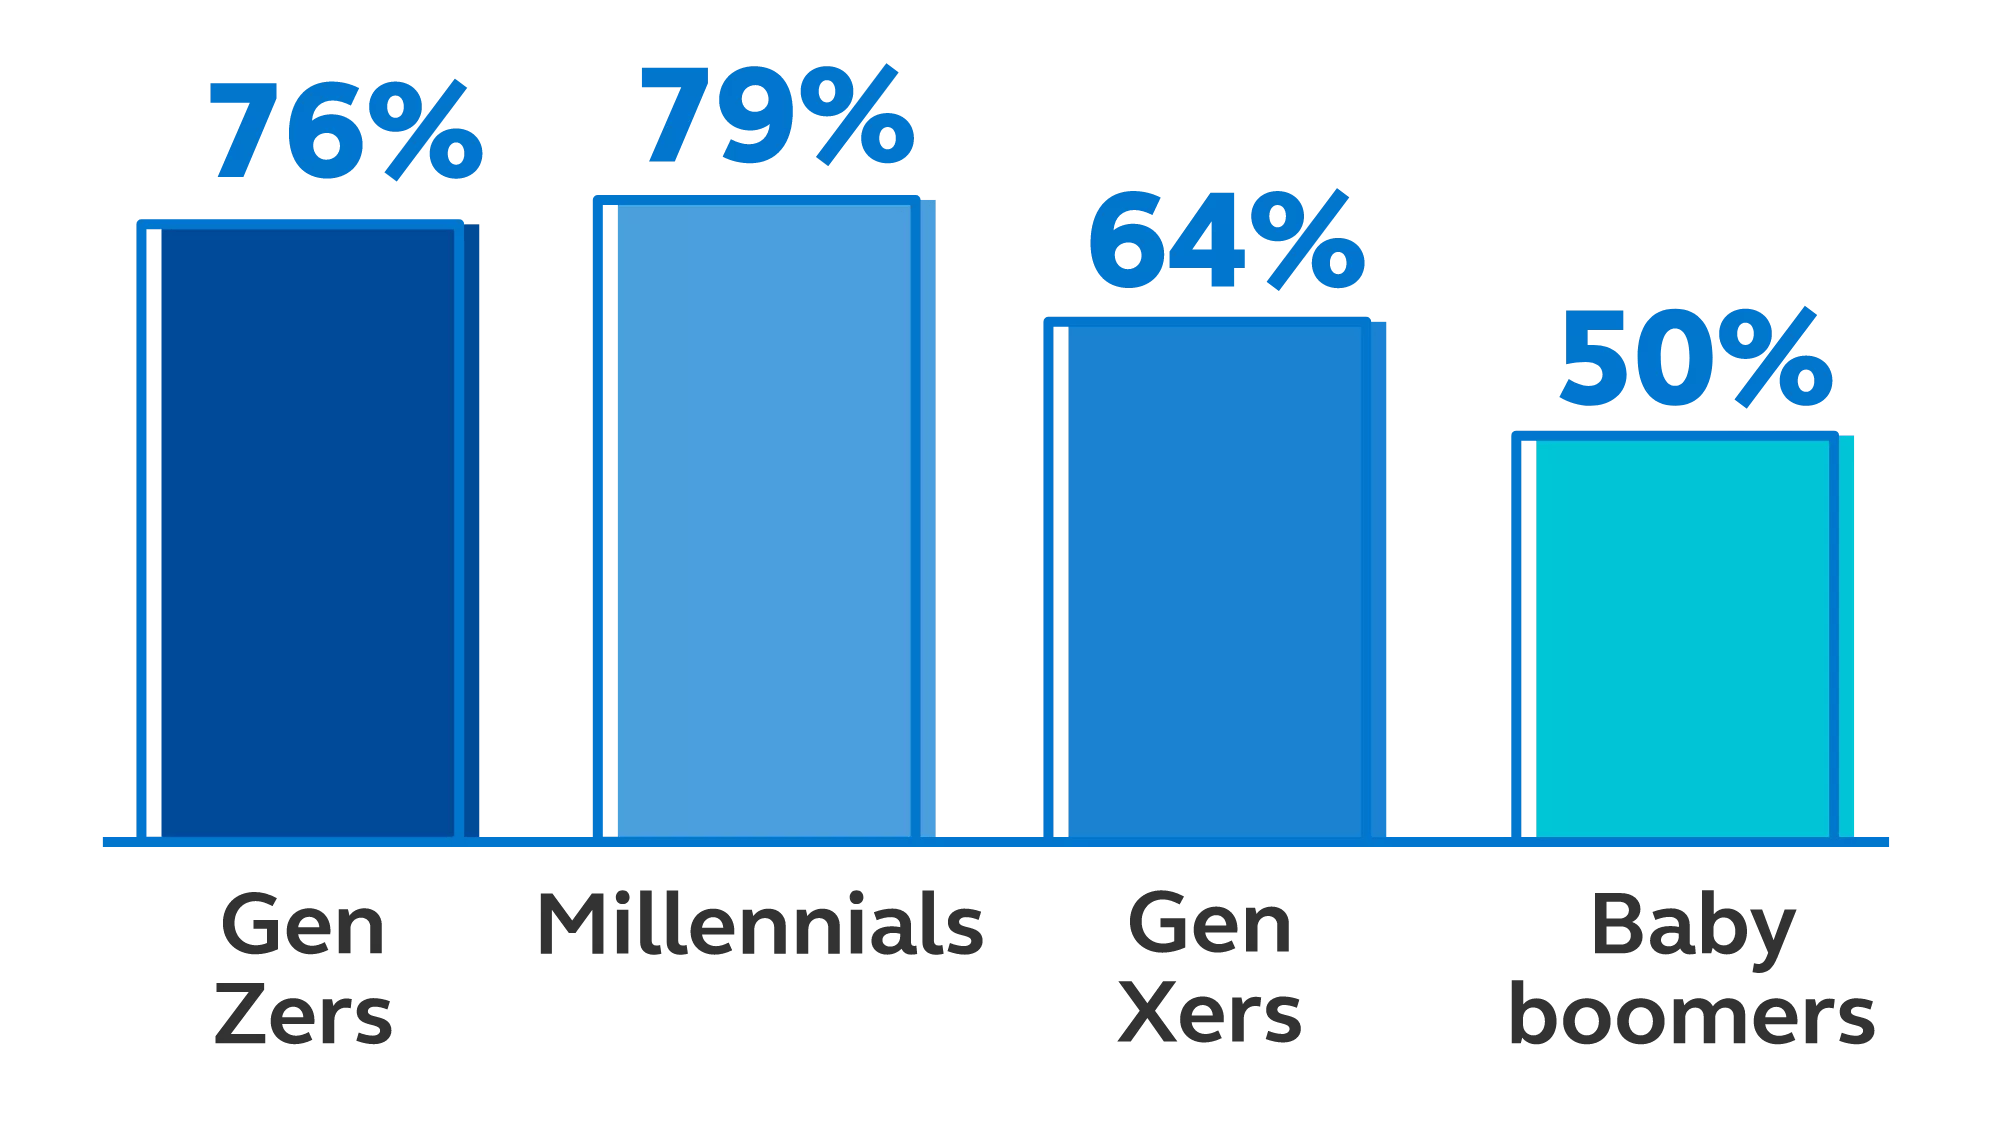 Gen Zers:76%, Millenials:79%, Gen Xers: 64%, Baby boomers: 50%